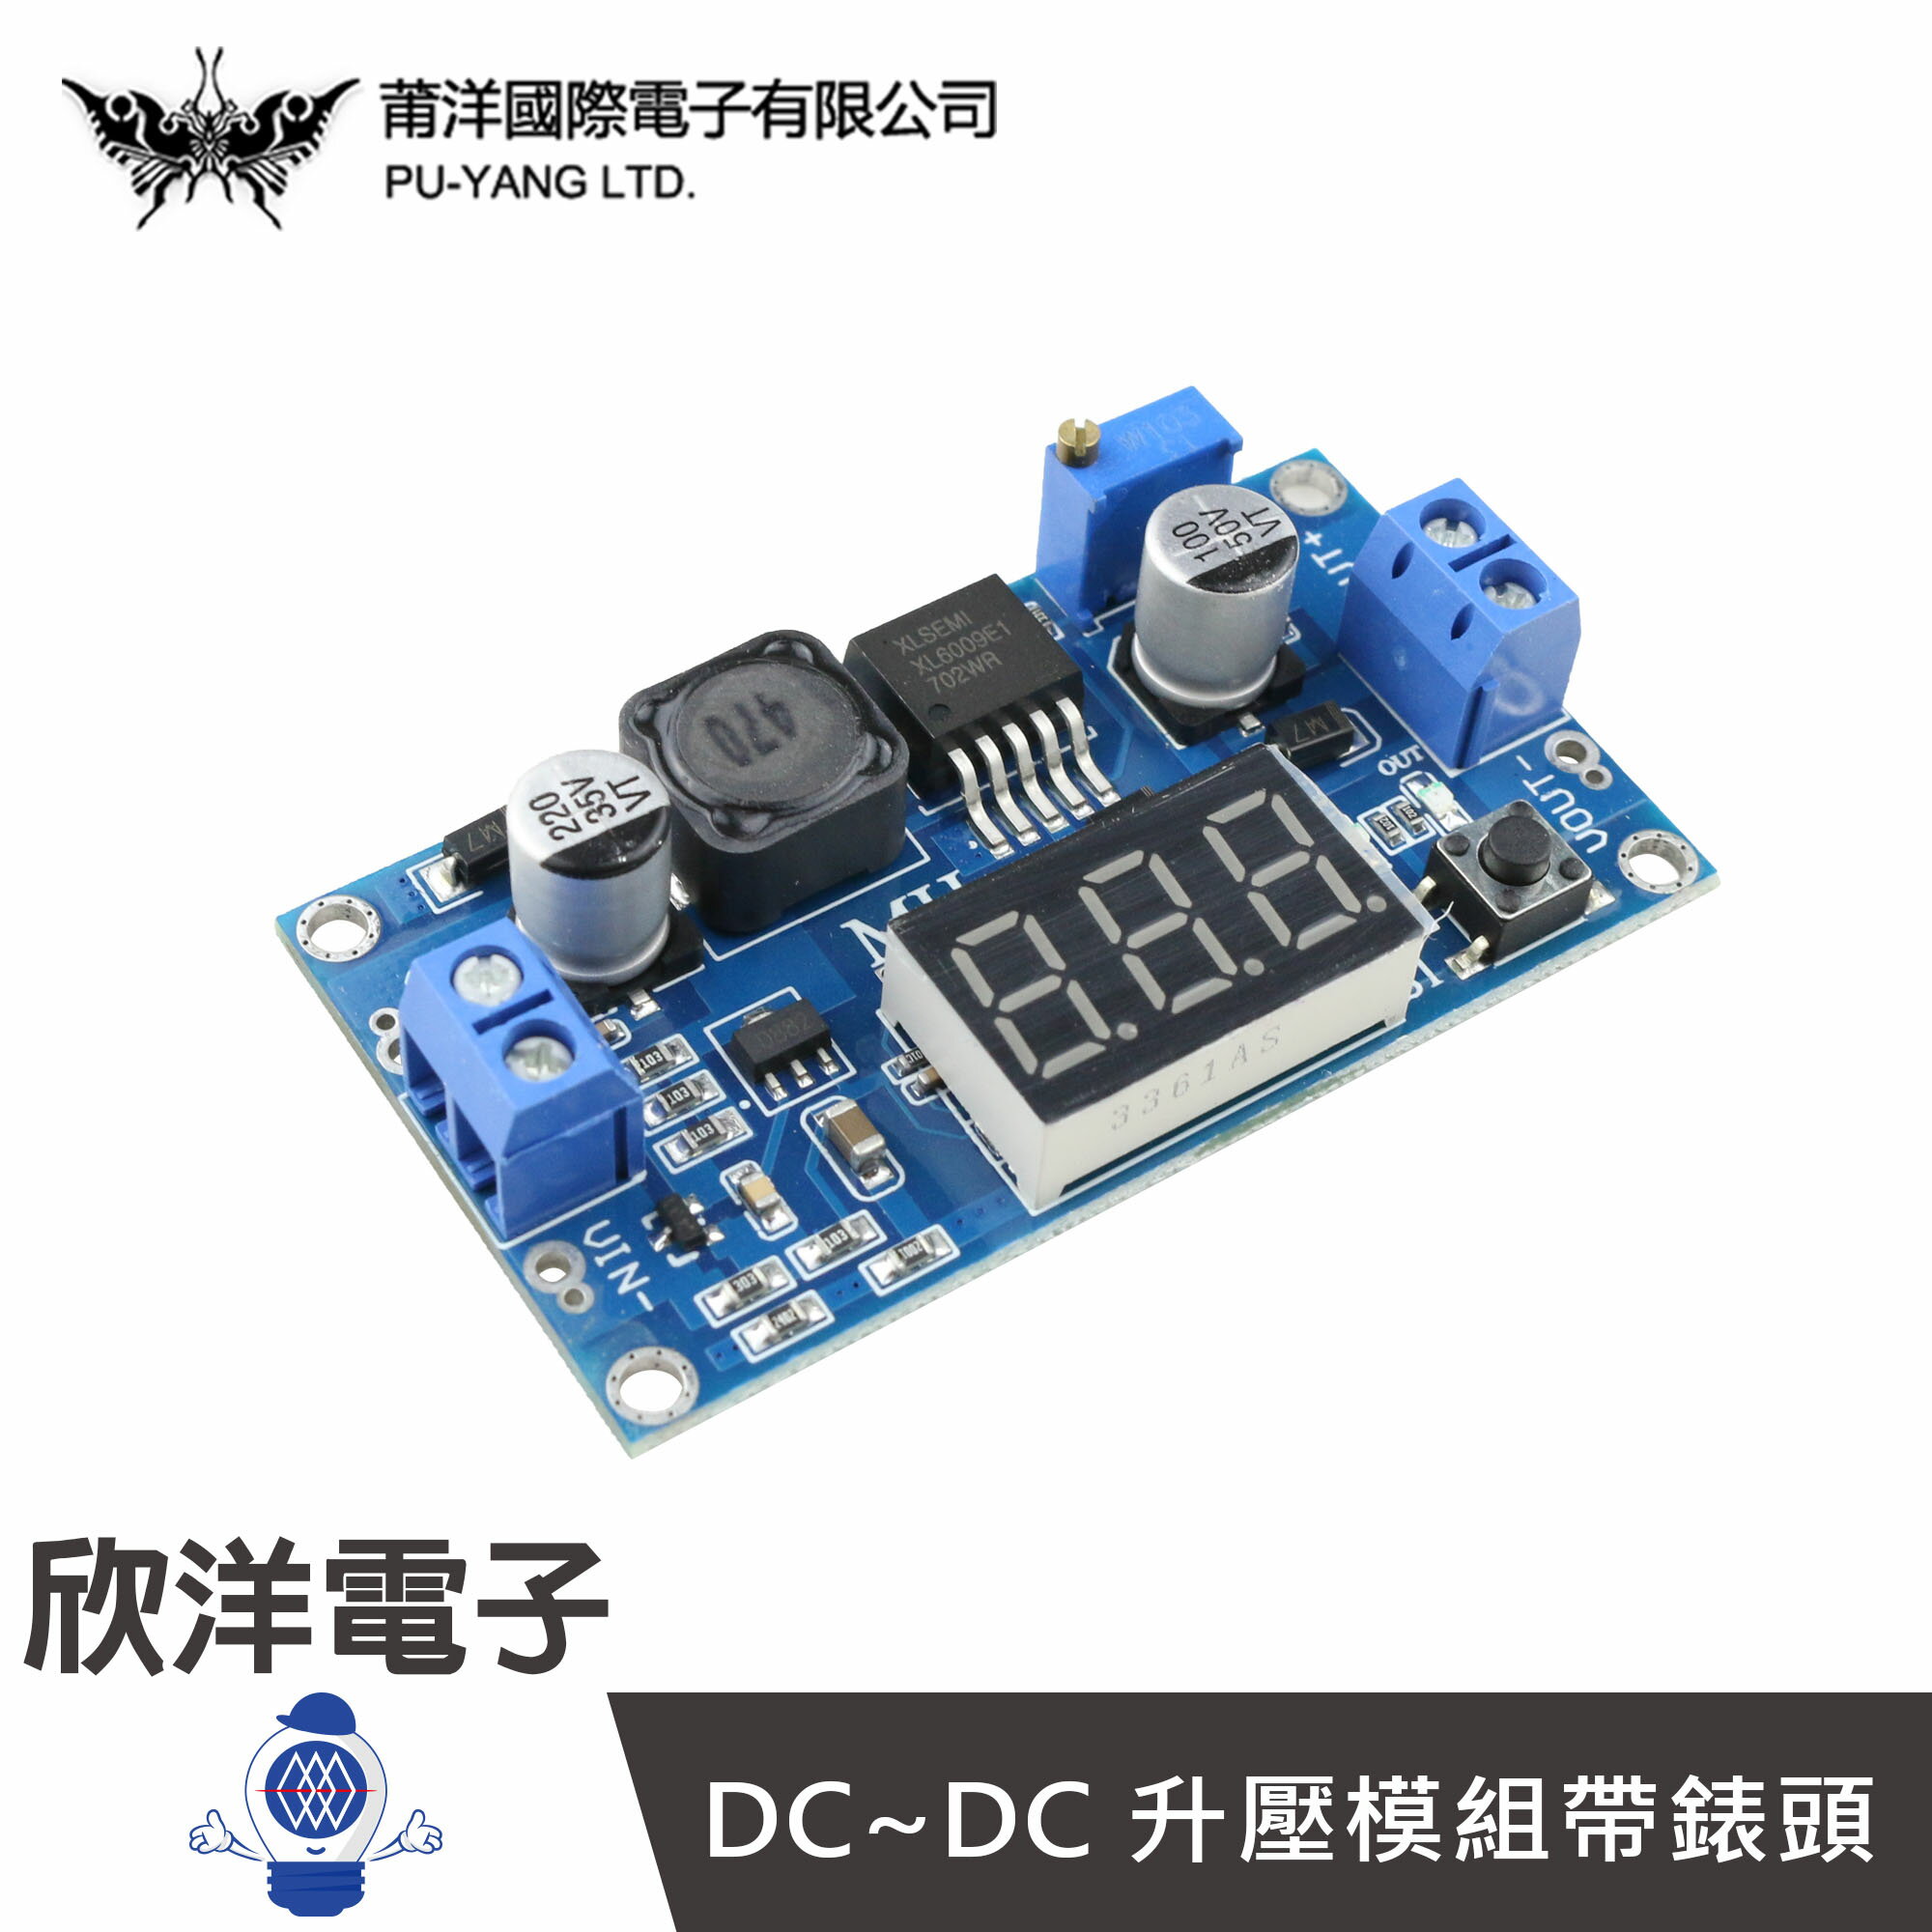 ※ 欣洋電子 ※ DC~DC 升壓模組帶錶頭 可調電壓/切換顯示/最大電流4A (1369) /實驗室/學生模組/電子材料/電子工程/適用Arduino